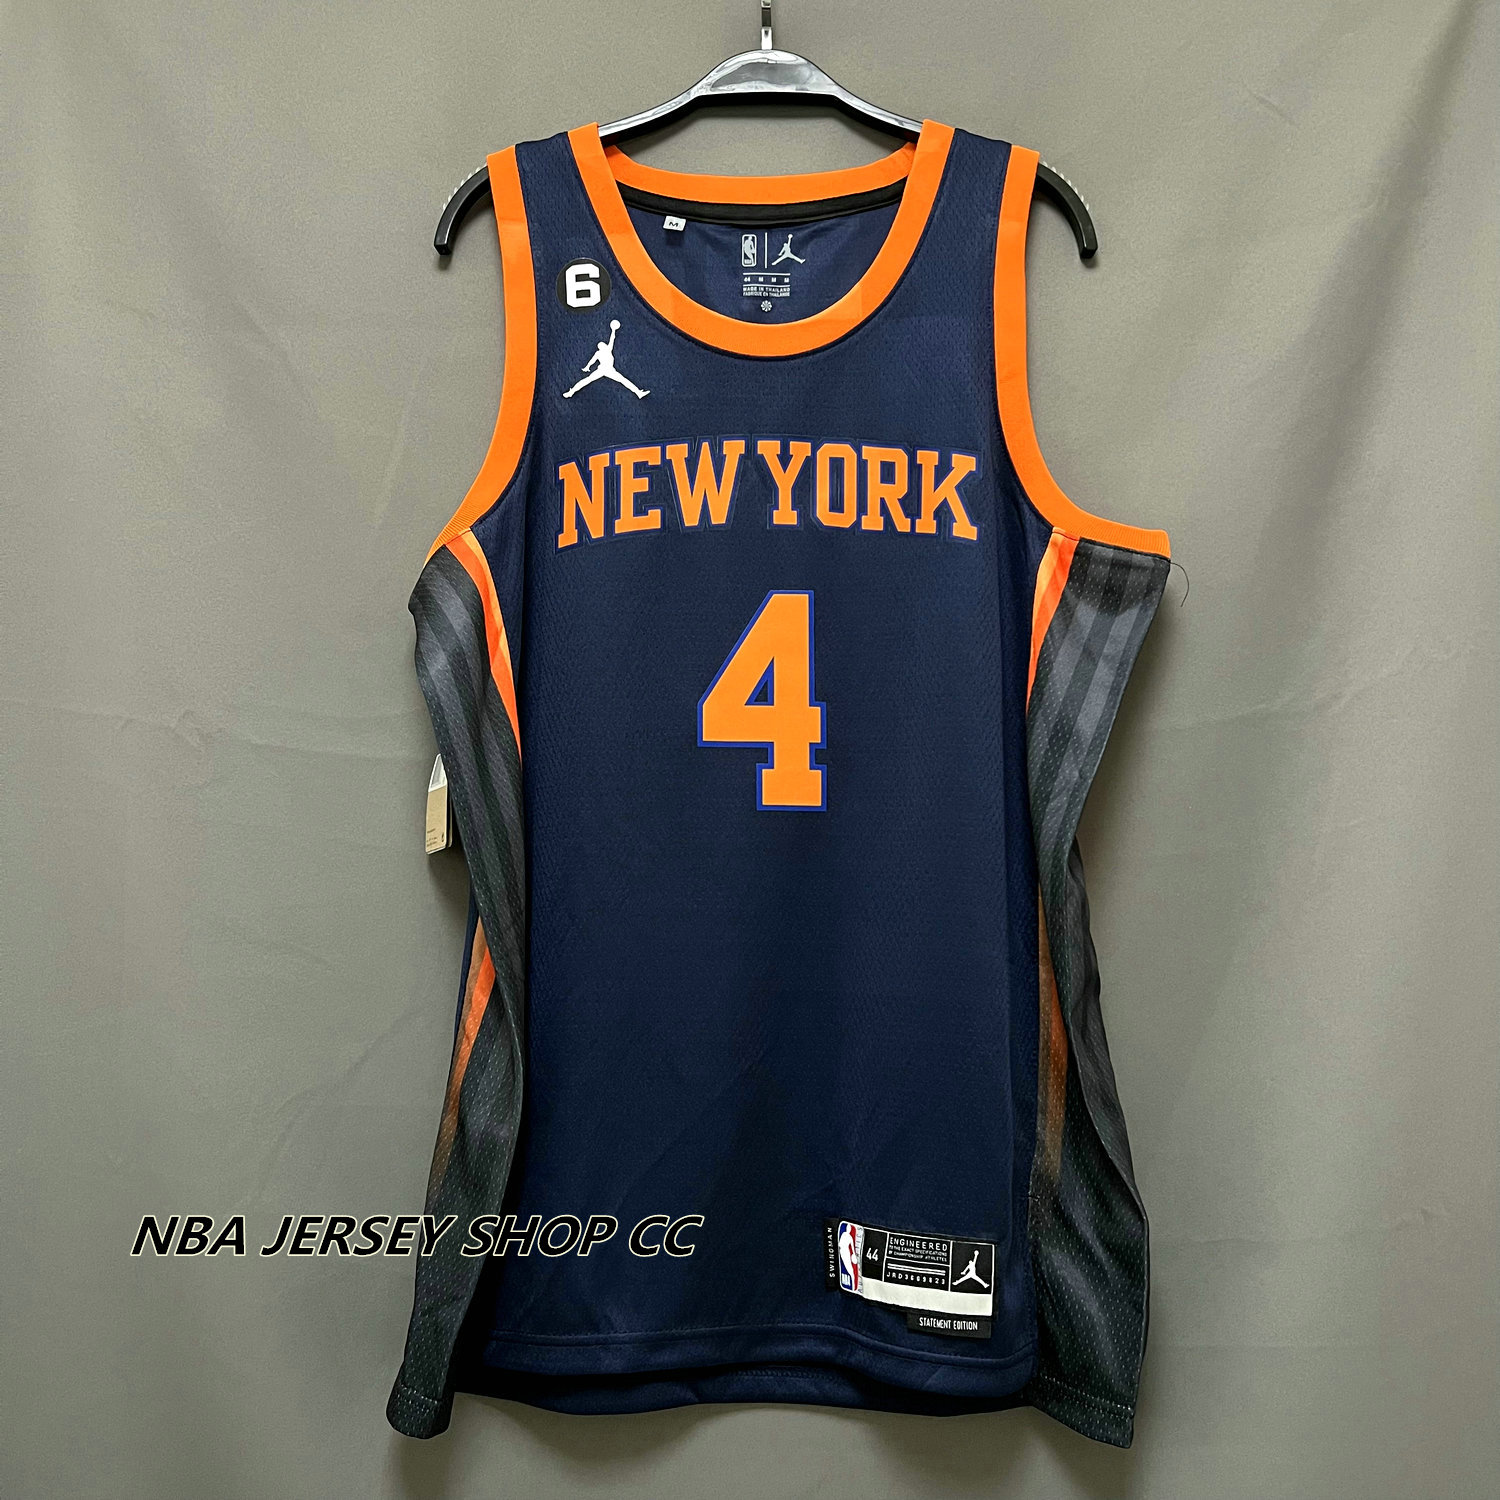 New York Knicks #4 Derrick Rose Jersey Basketball Uniform Sport